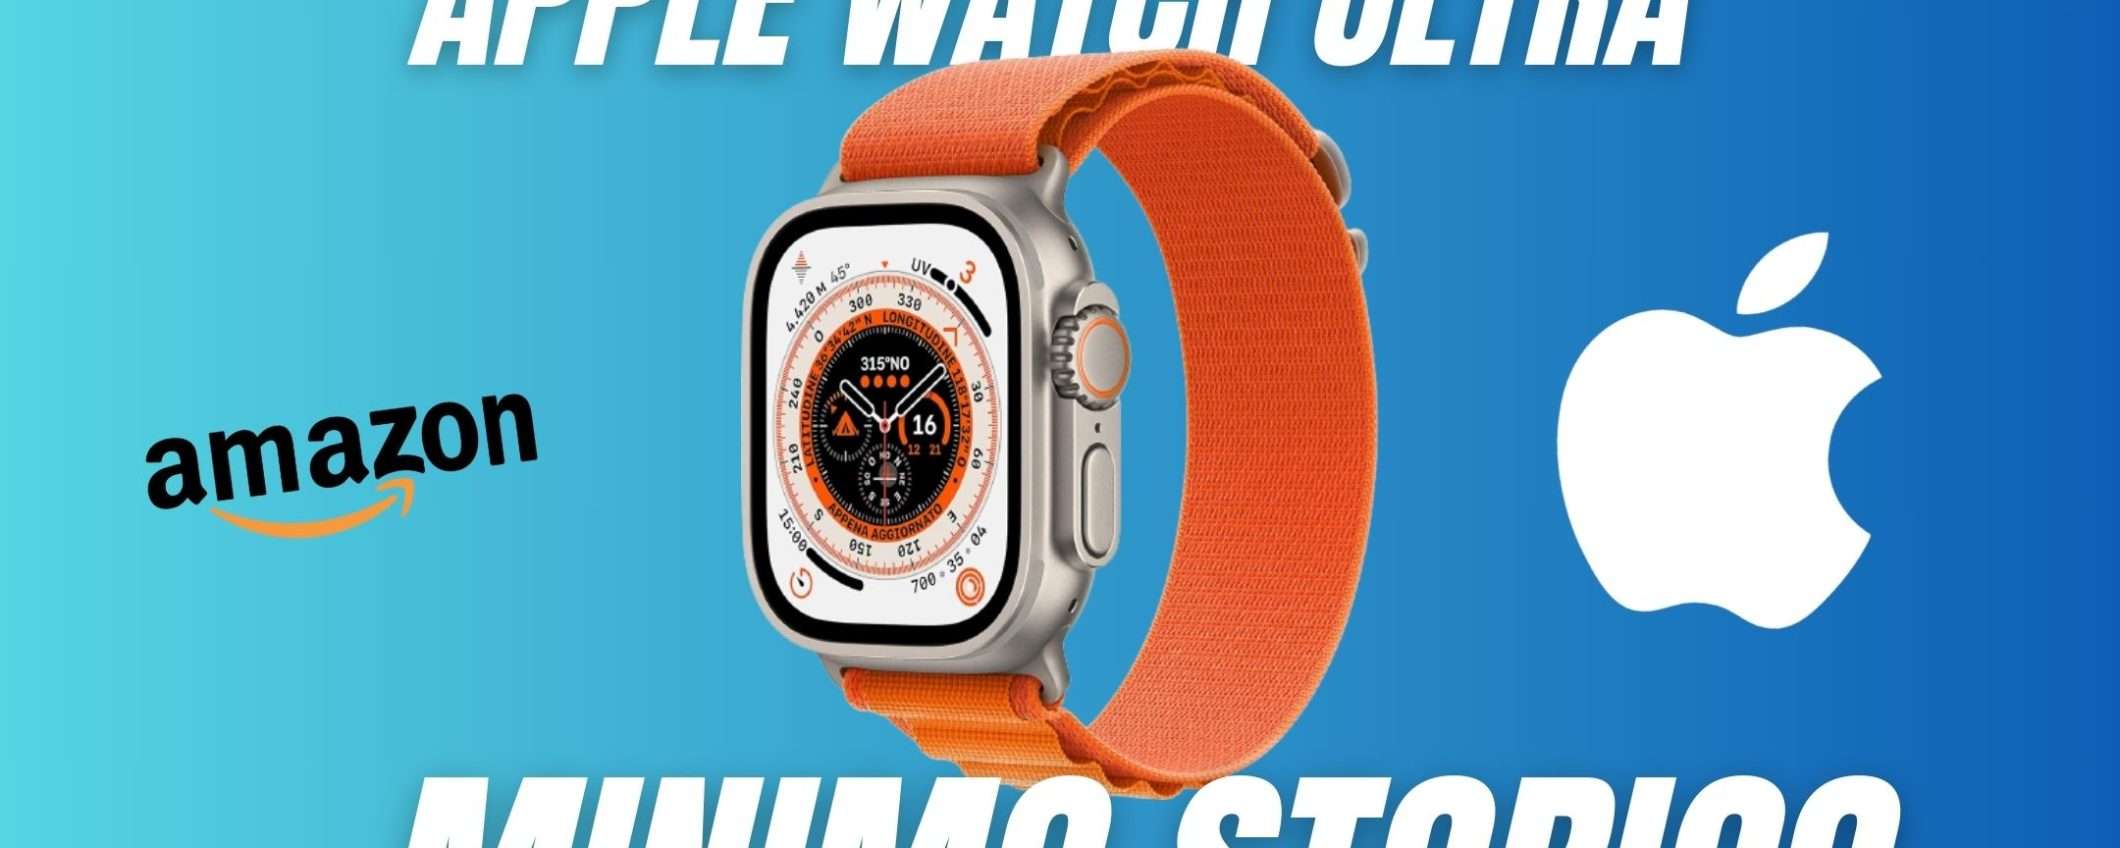 Apple Watch Ultra crolla al PREZZO PIÙ BASSO di sempre!